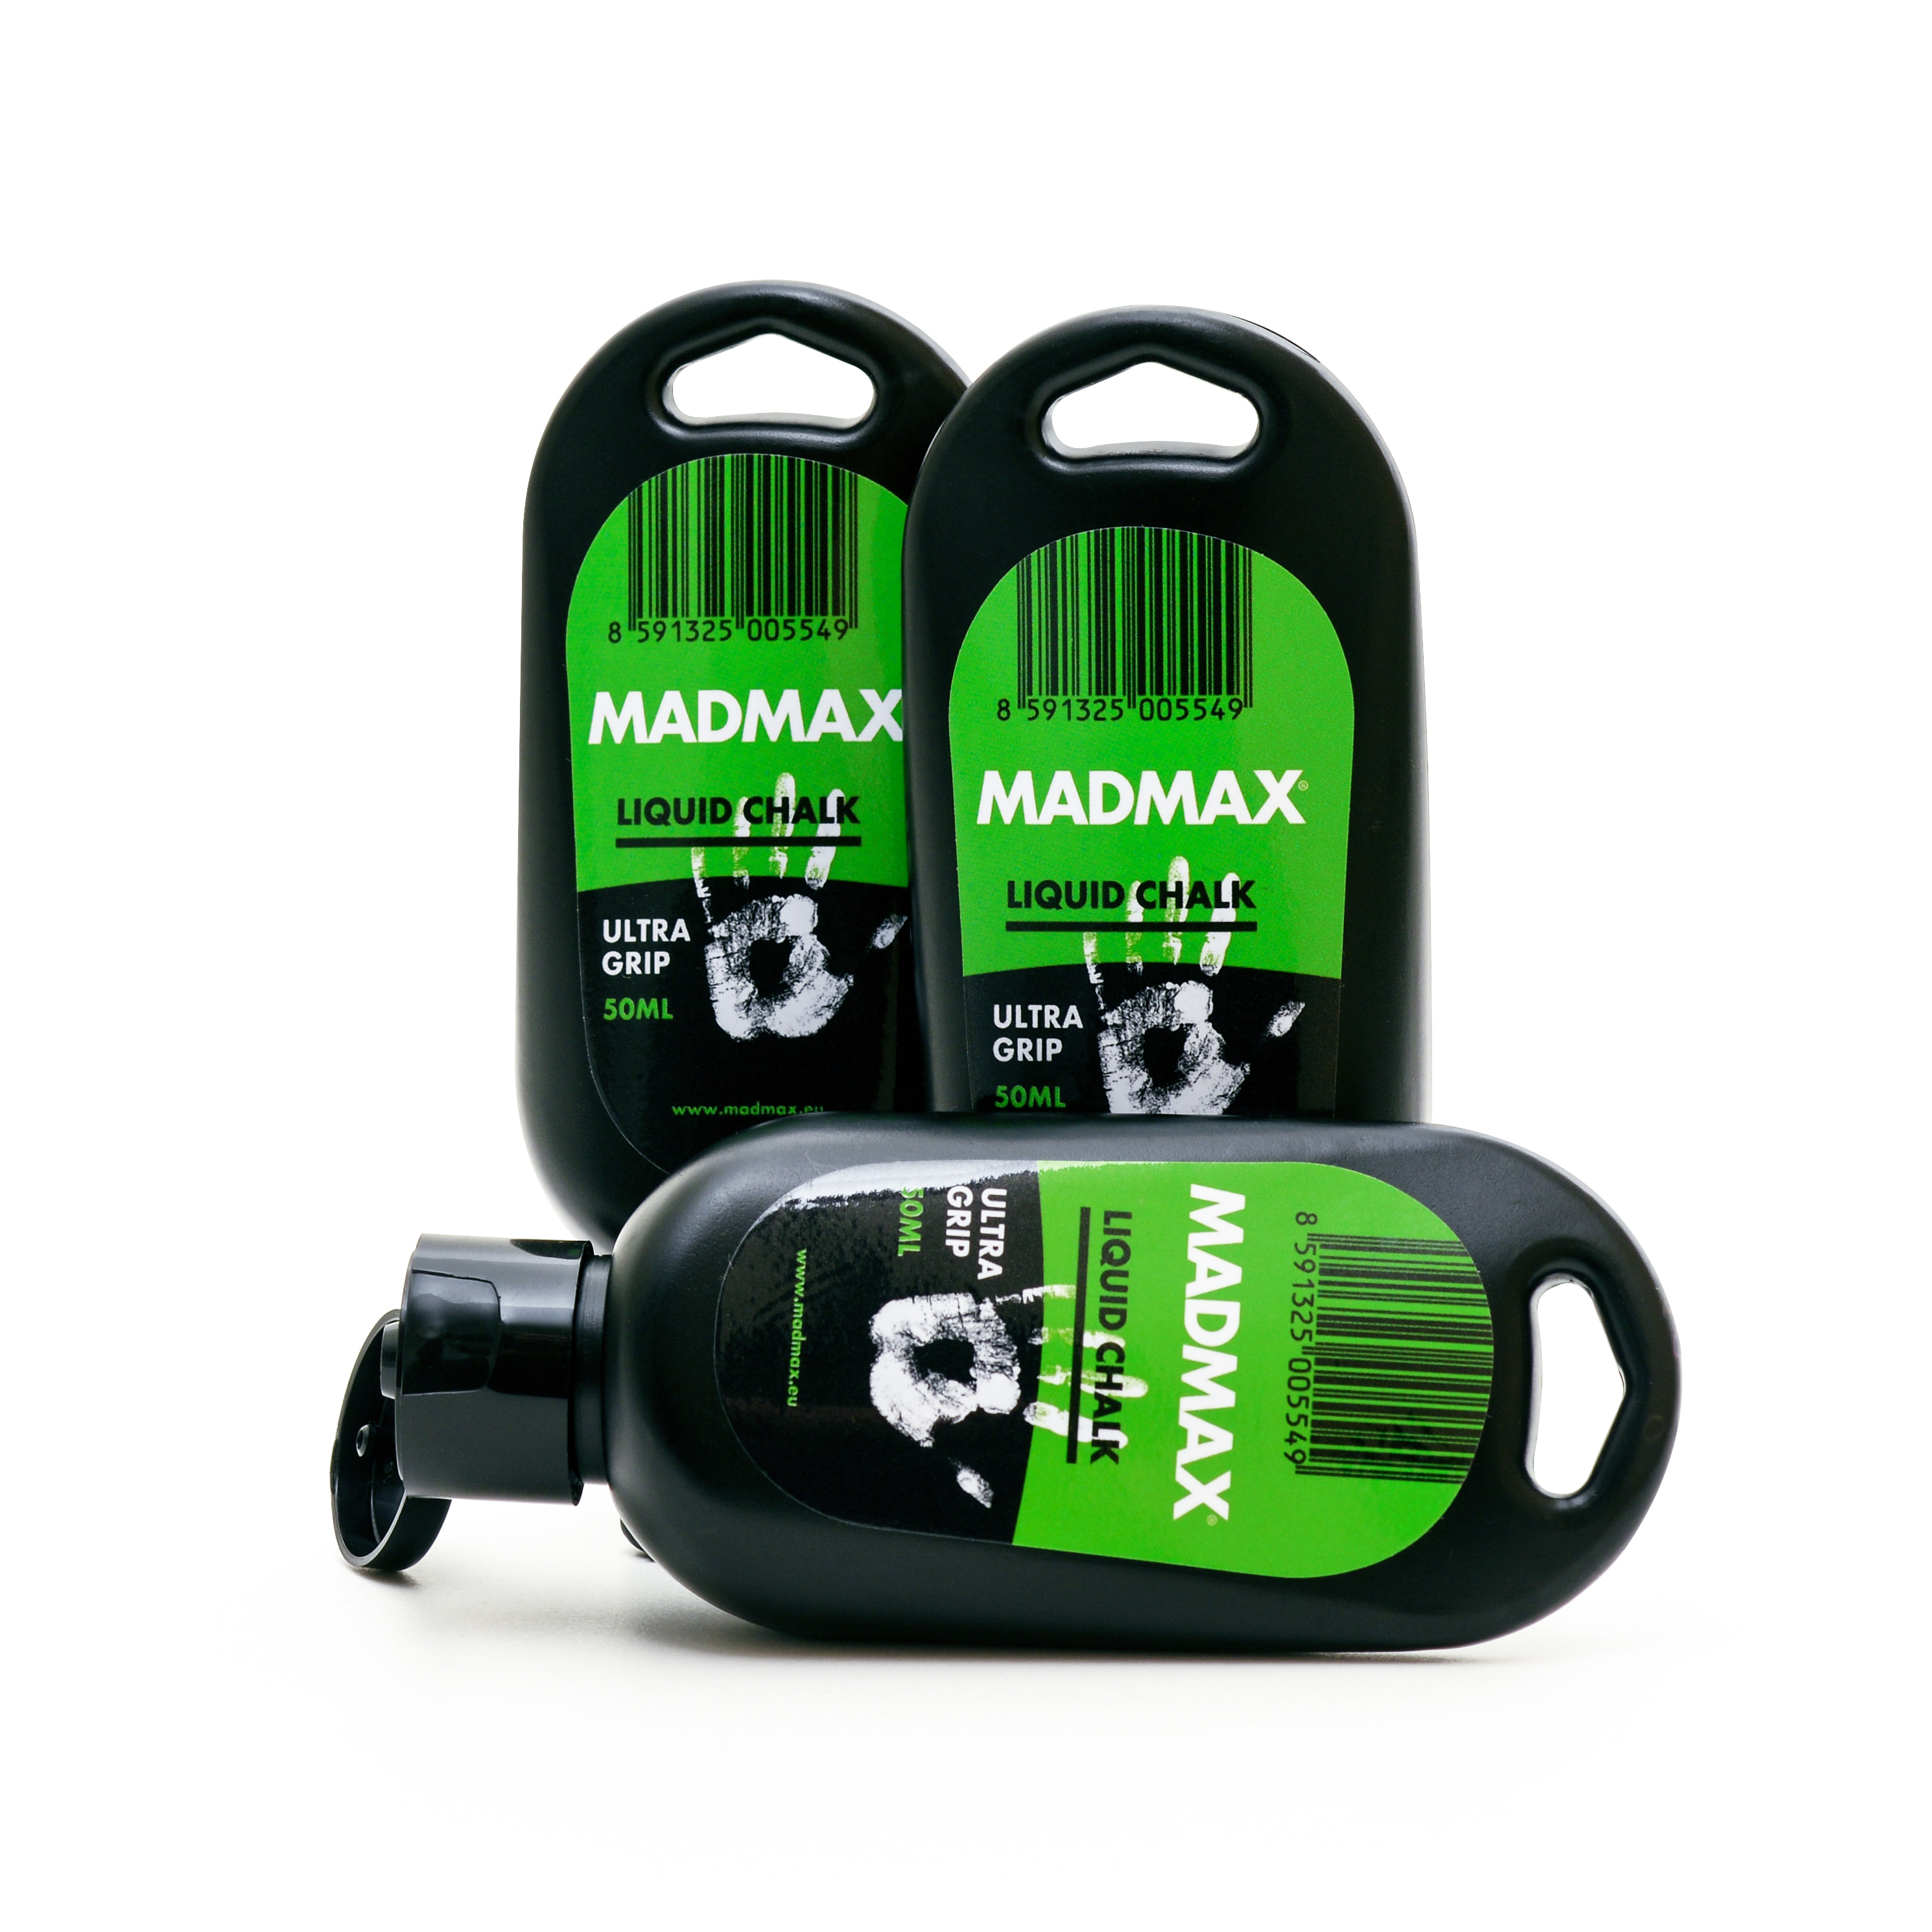 MADMAX Liquid Chalk 50ml